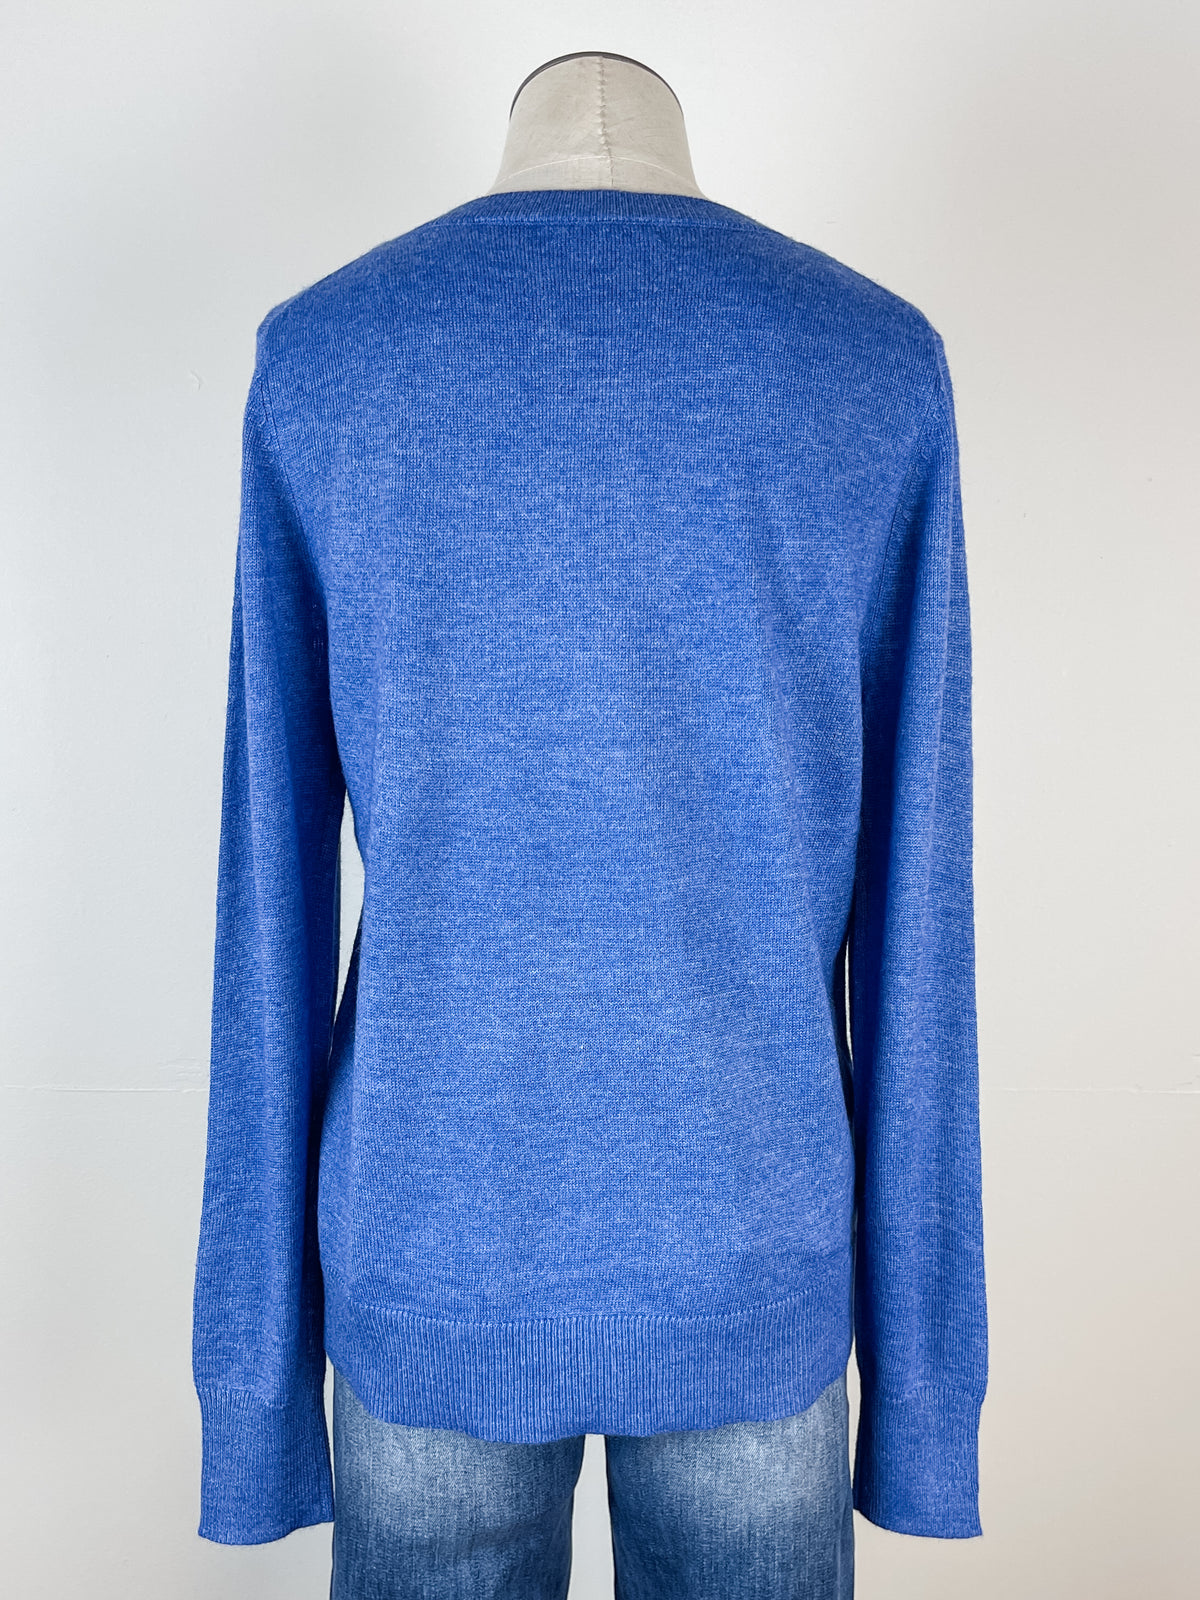 Parker Basic V Neck Sweater in Blue